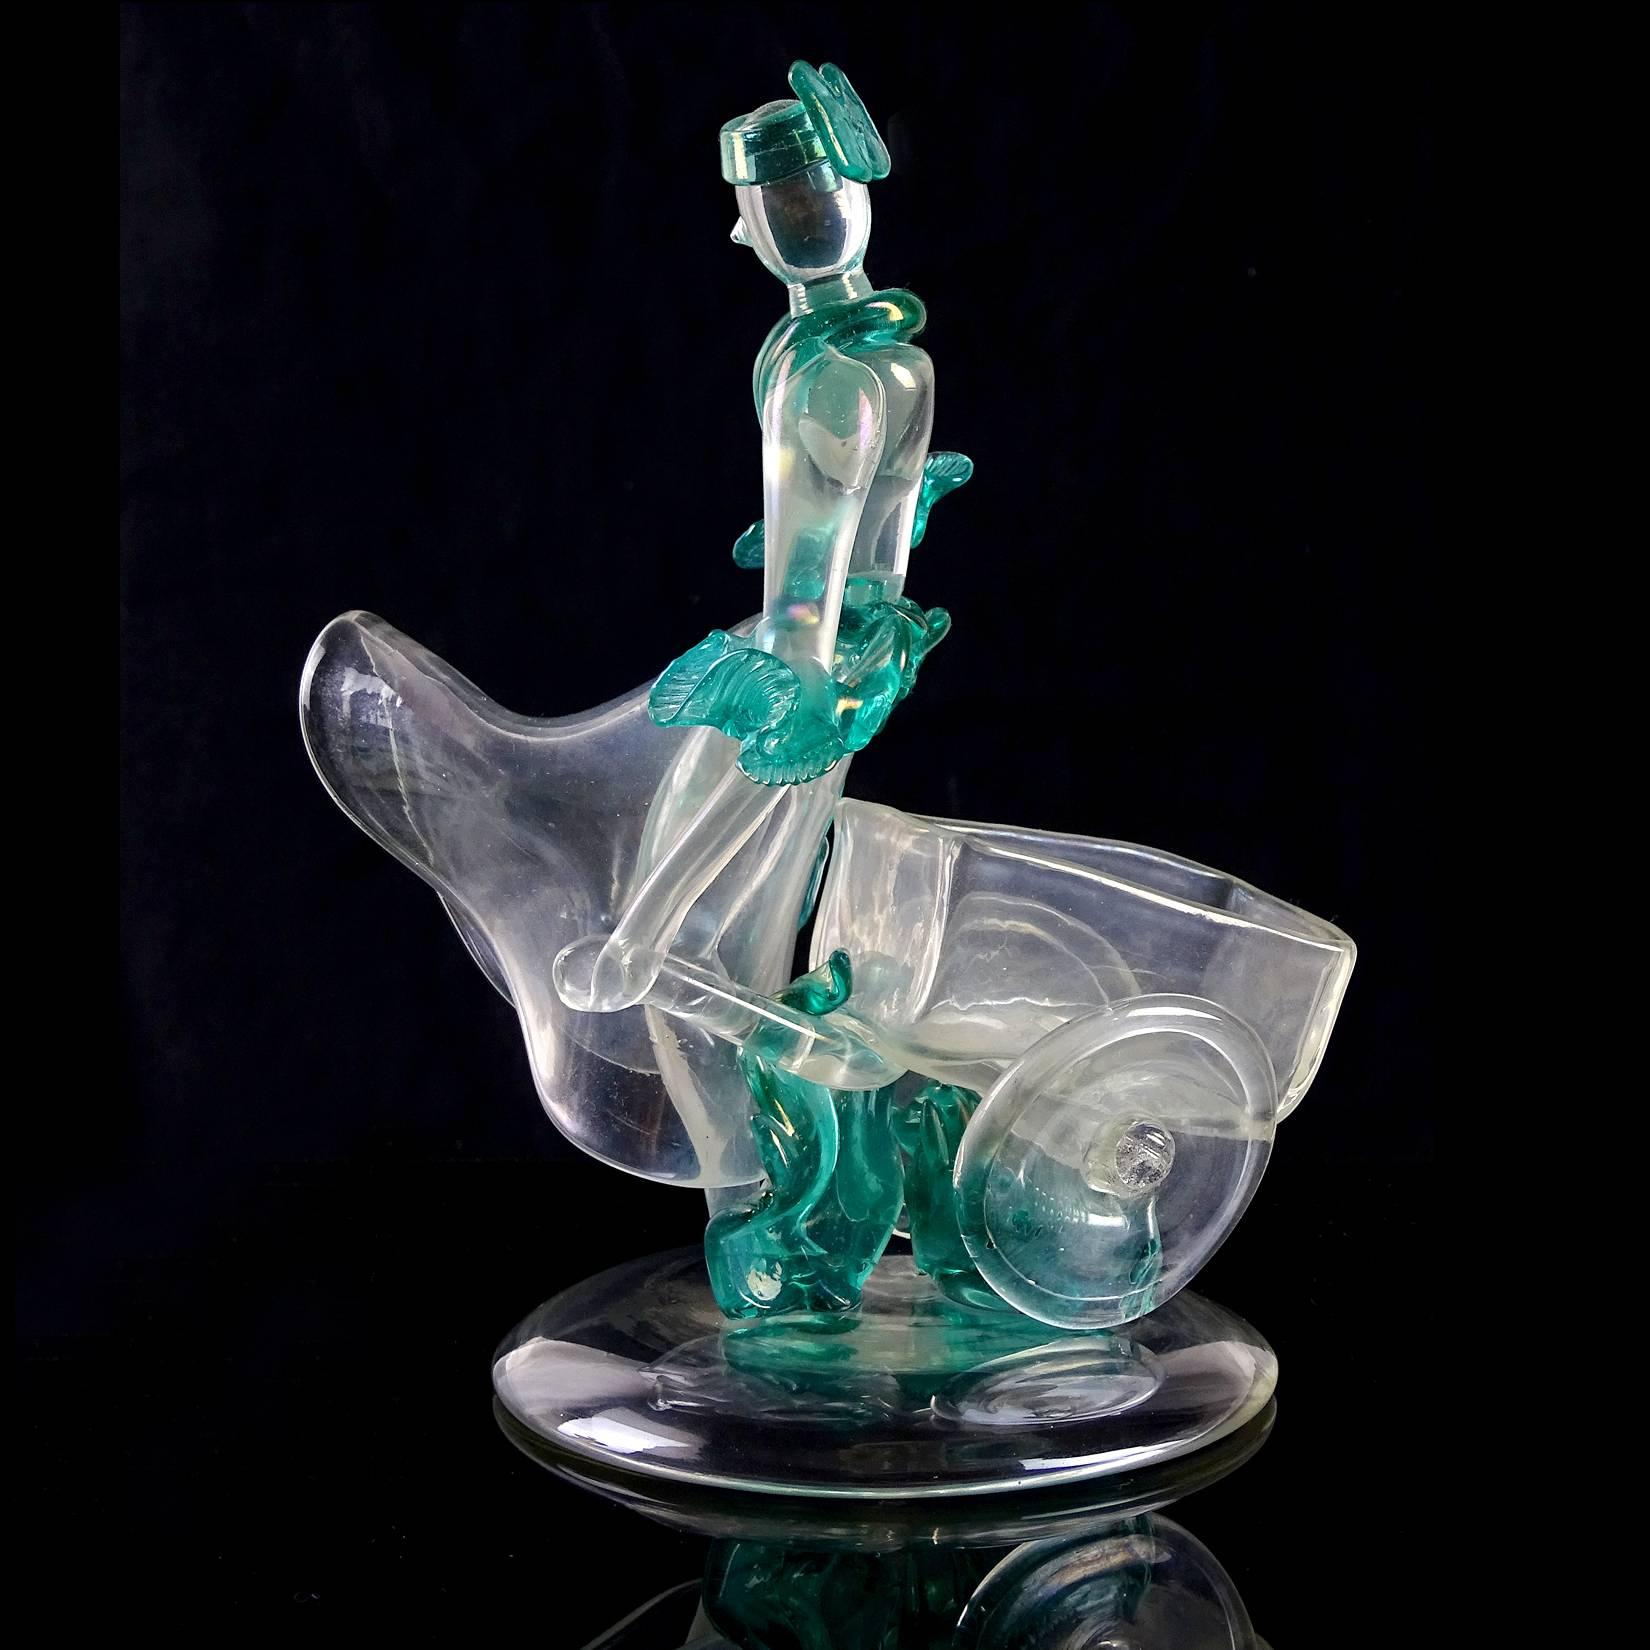 Hand-Crafted Flavio Poli Seguso Vetri d'Arte Murano Iridescent Italian Art Glass Sculpture